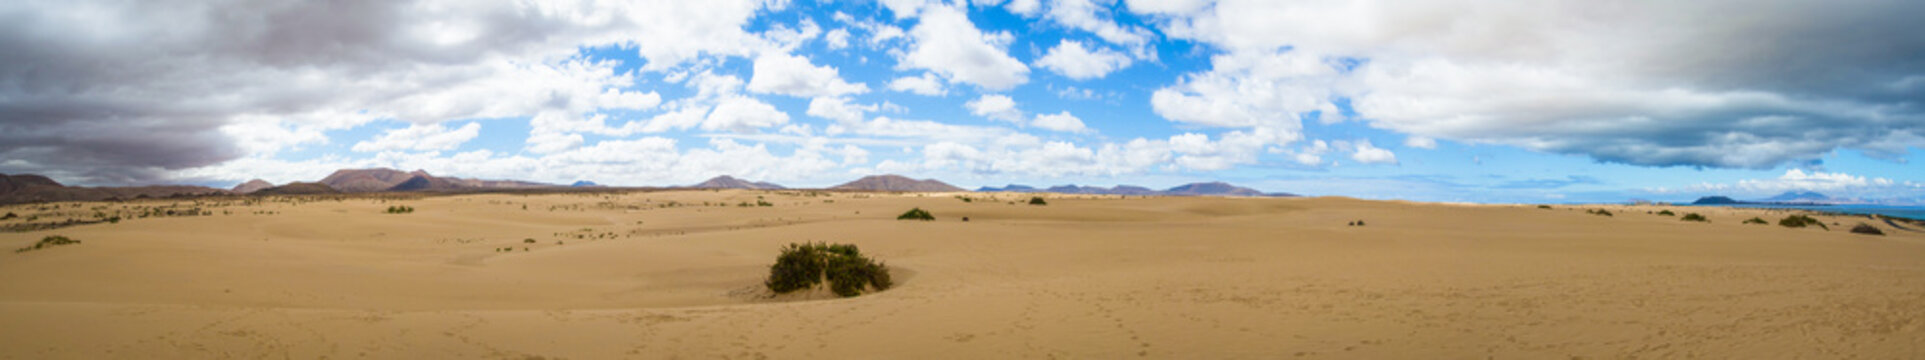 Desert landscape at Park of Corralejo, Fuerteventura, Canary isl